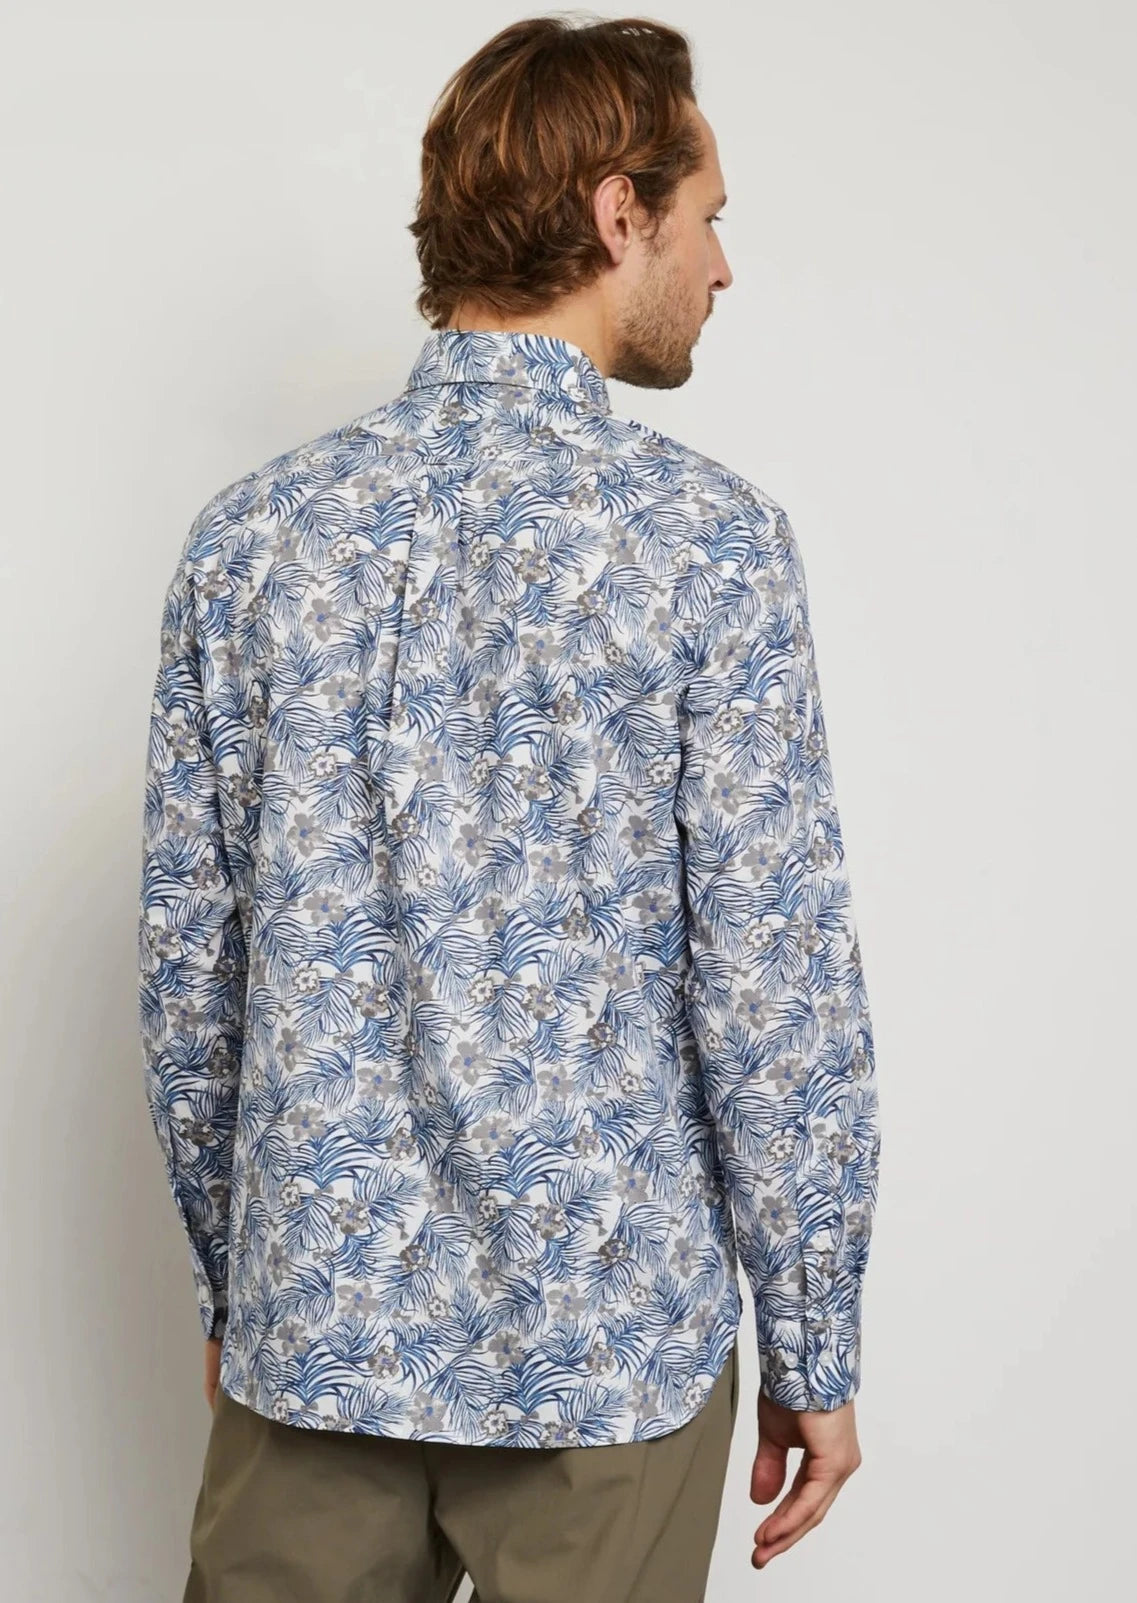 Chemise fleurie Eden Park bleu clair en coton pour homme I Georgespaul